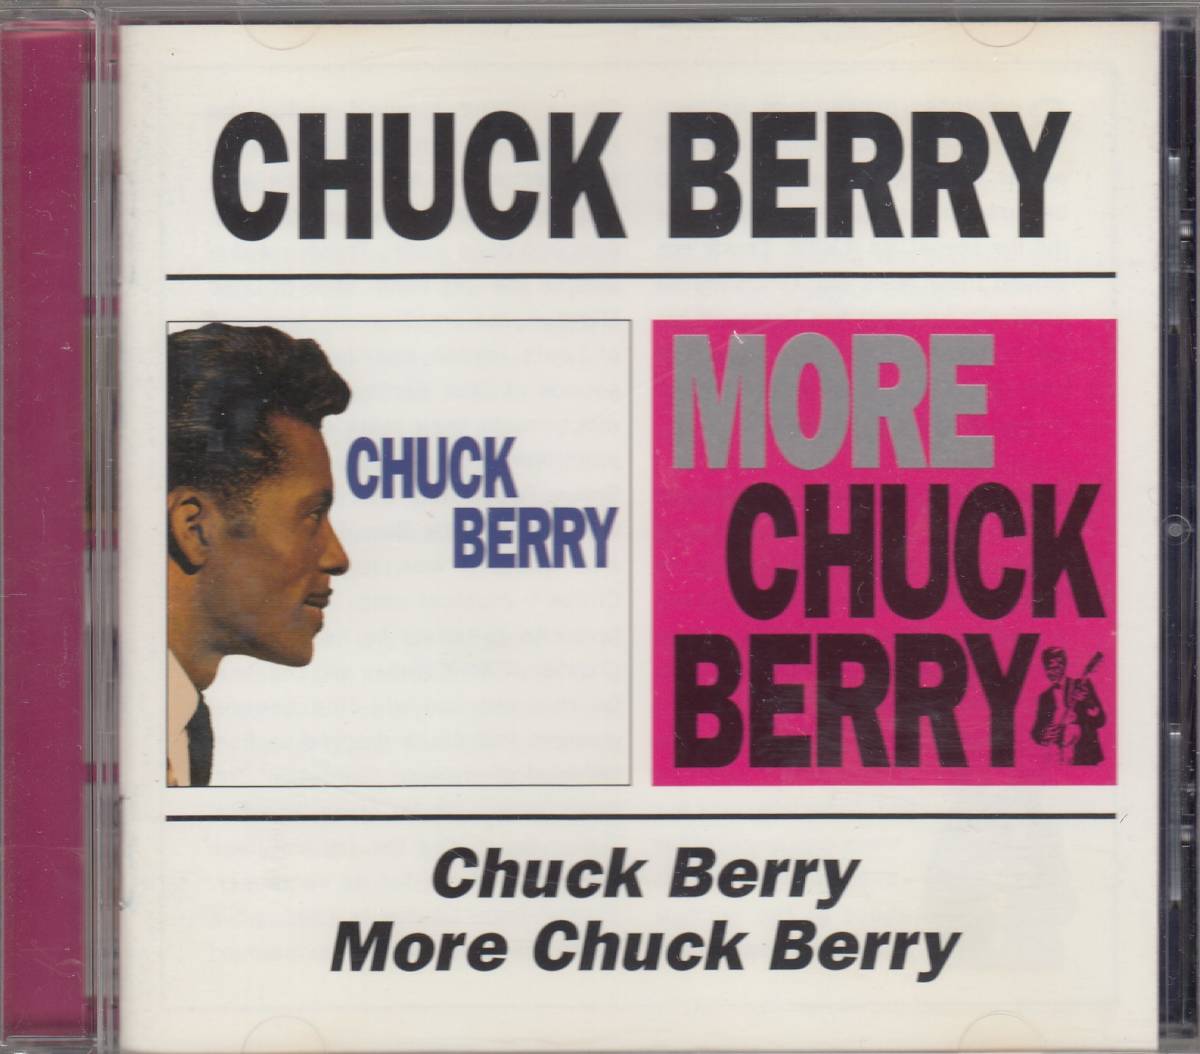  транспорт Chuck Berry Chuck Berry / More Chuck Berry молния * Berry * стандарт номер #BGOCD-394* бесплатная доставка # быстрое решение * переговоры иметь 